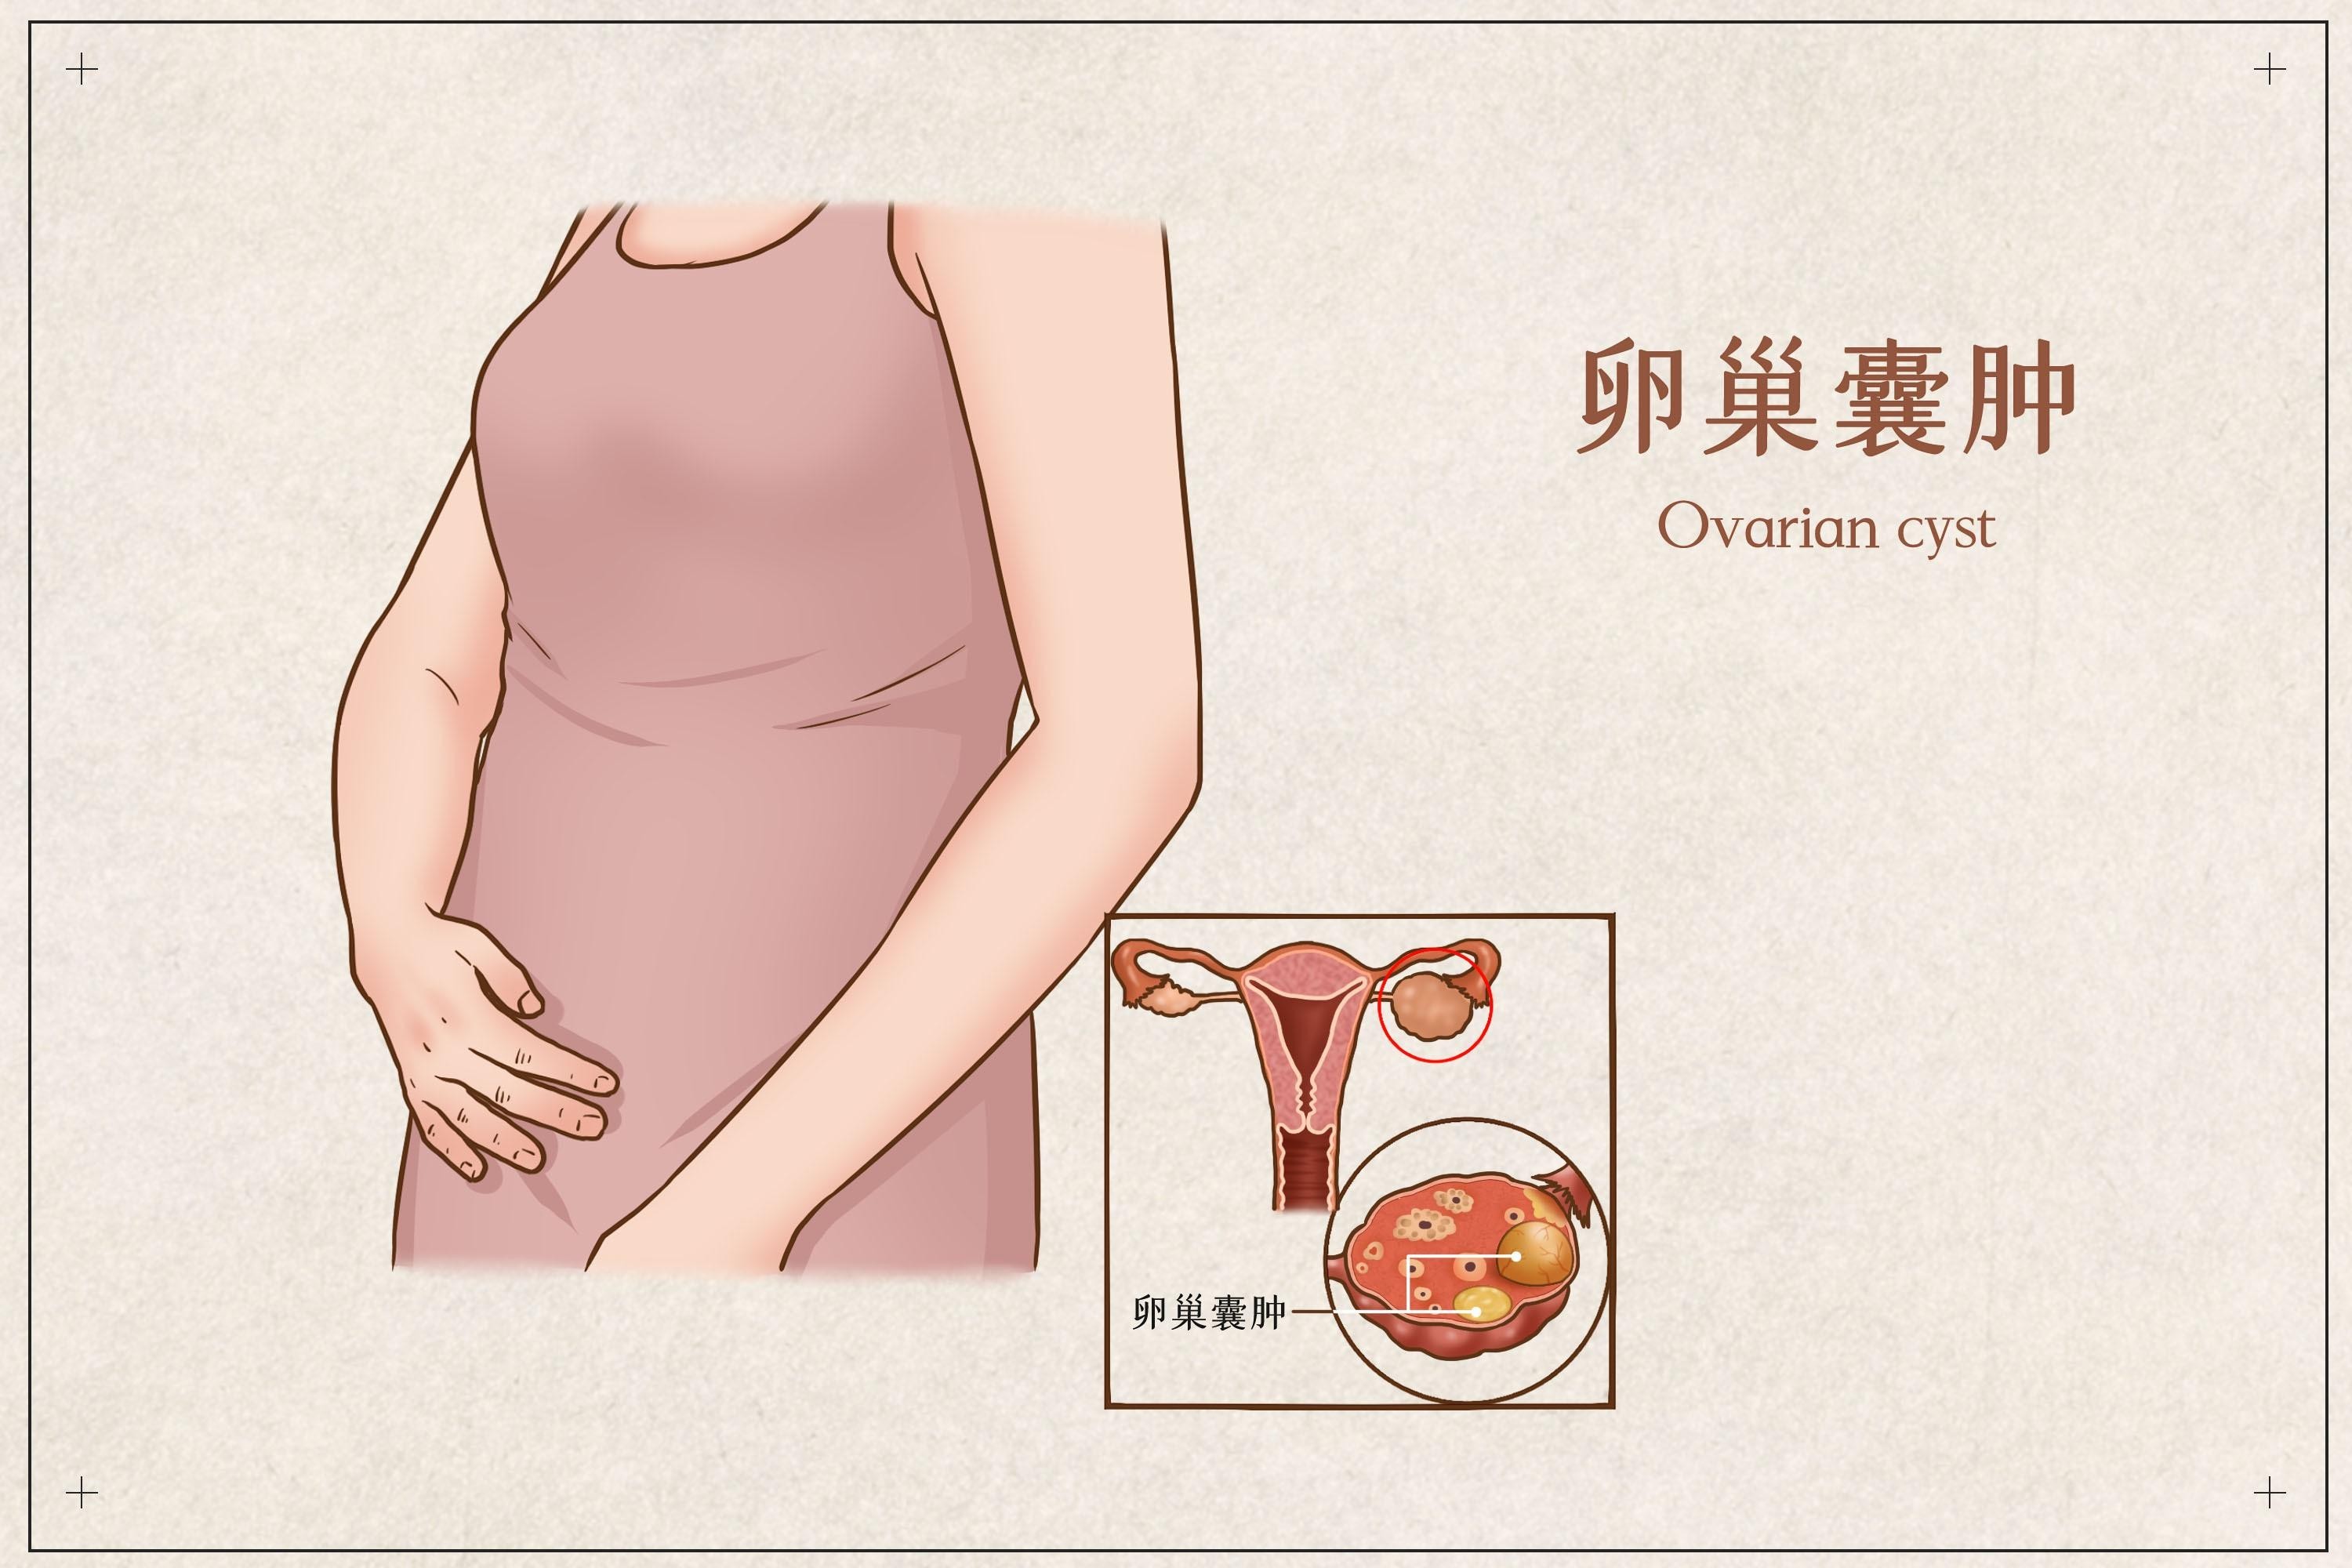 卵巢囊肿会影响女性怀孕吗?